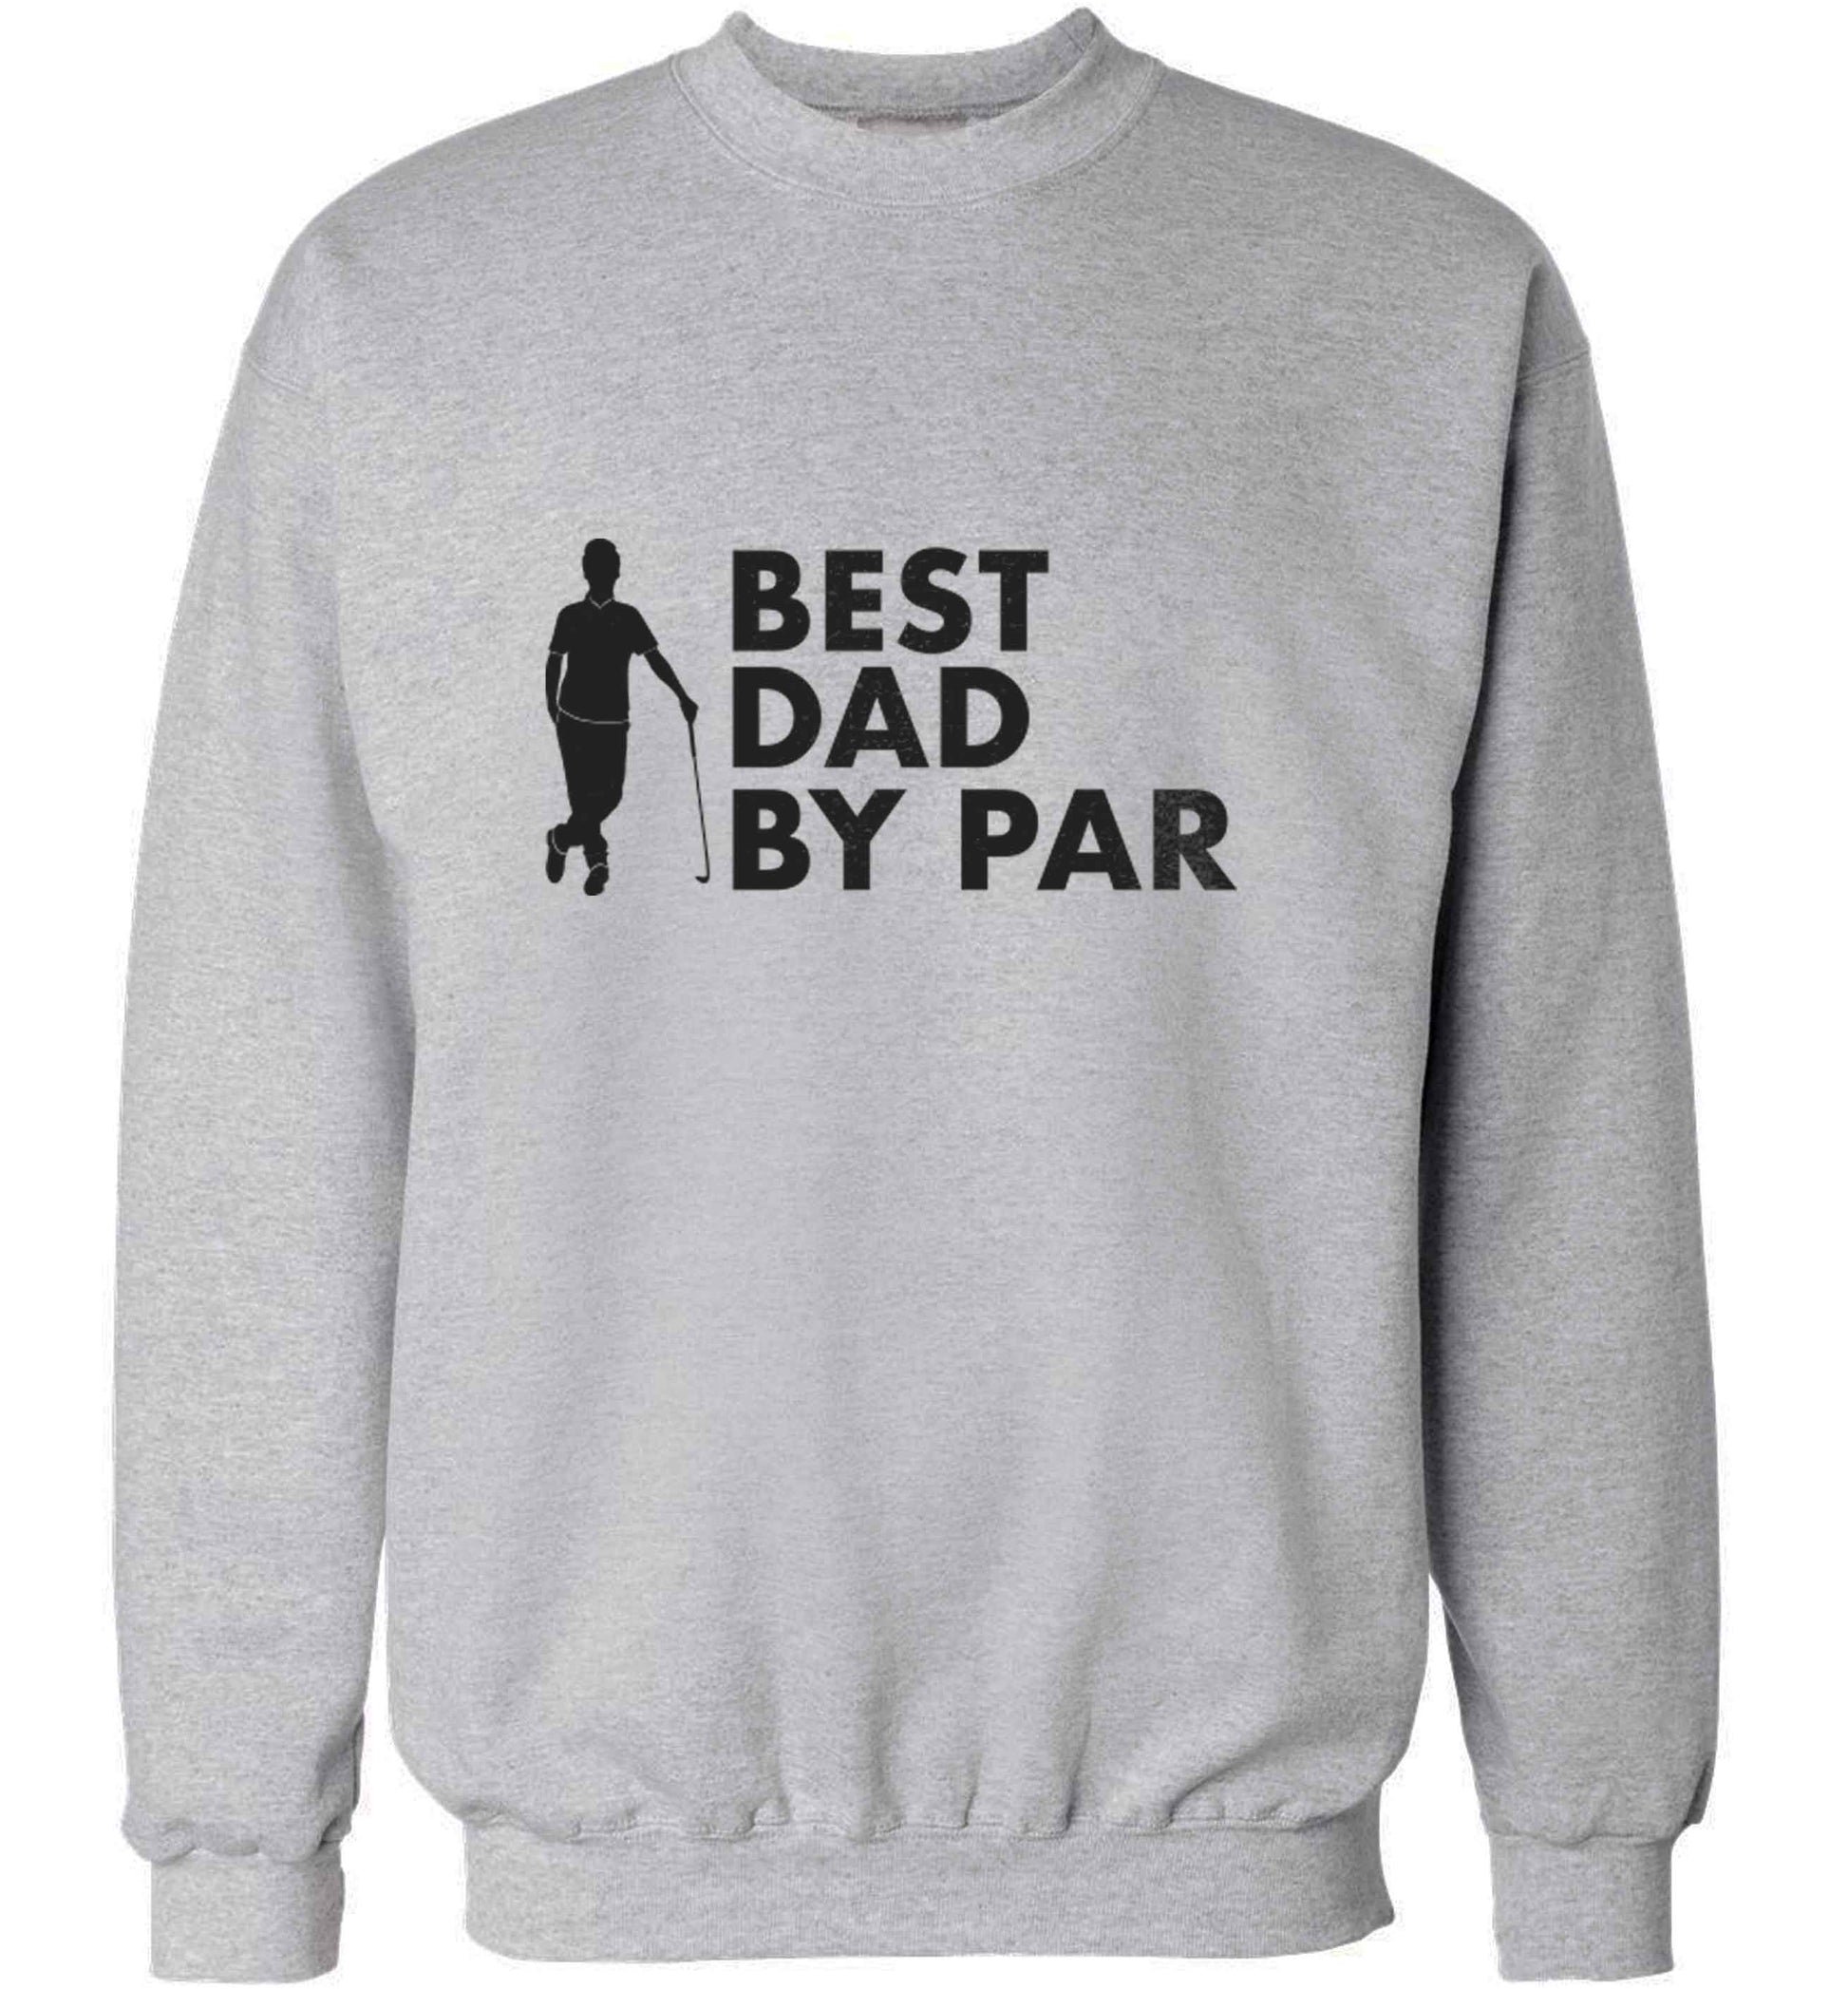 Best dad by par adult's unisex grey sweater 2XL